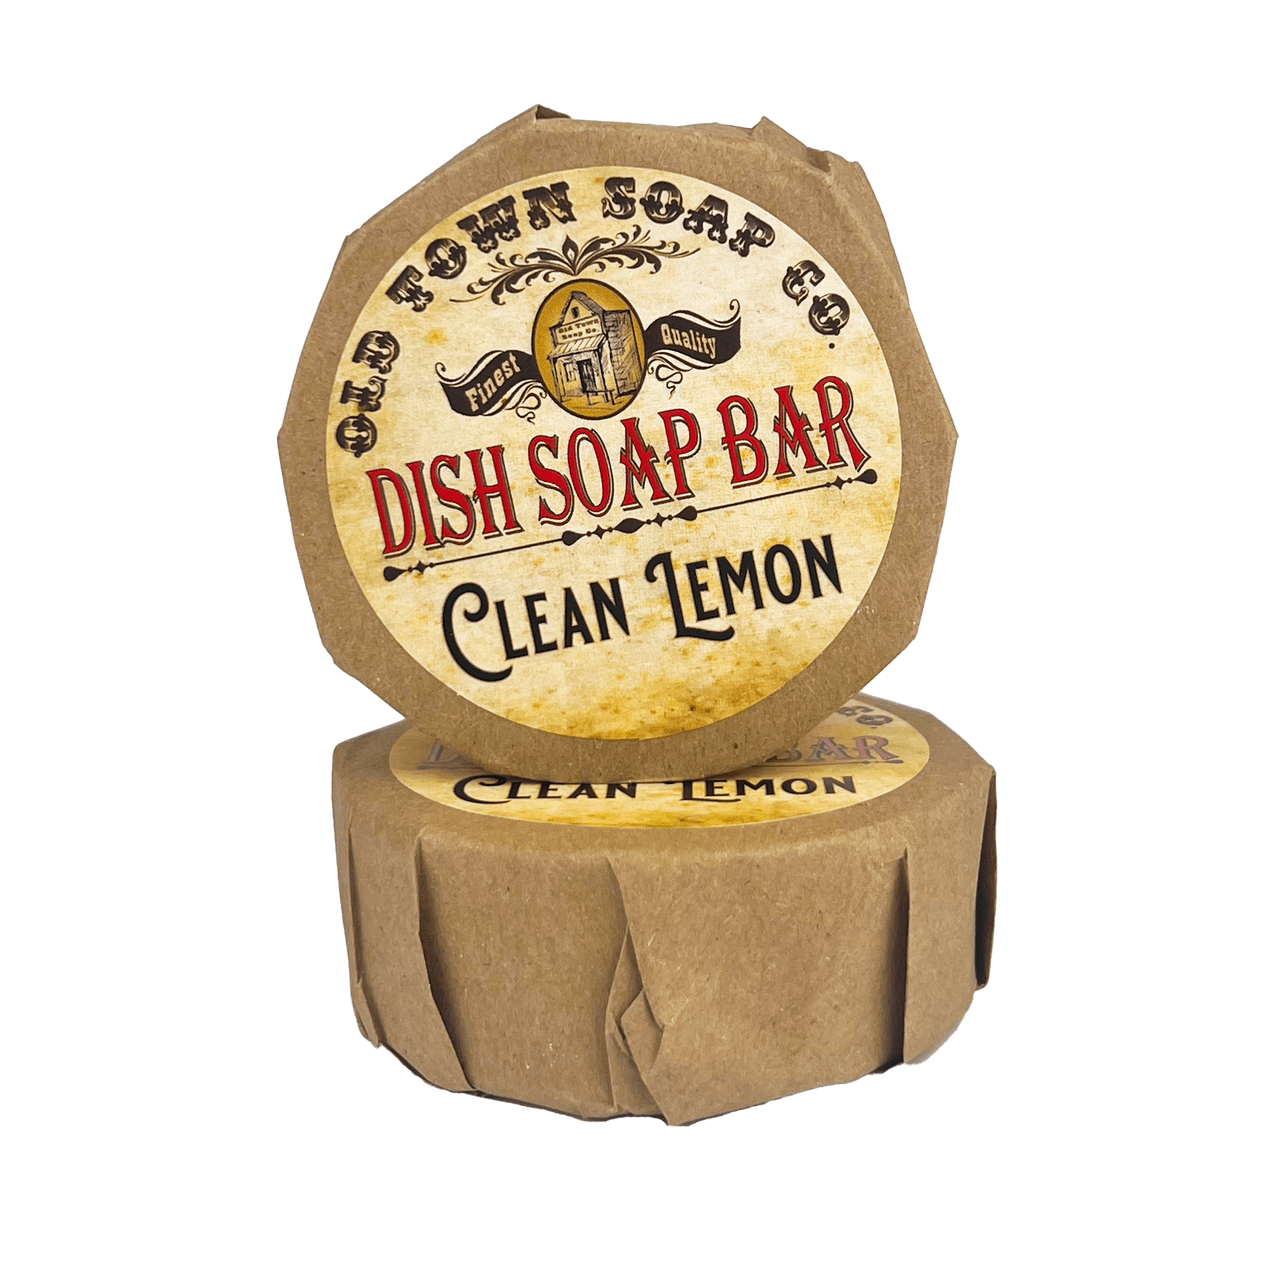 Clean Lemon -Dish Soap Bar - Old Town Soap Co.